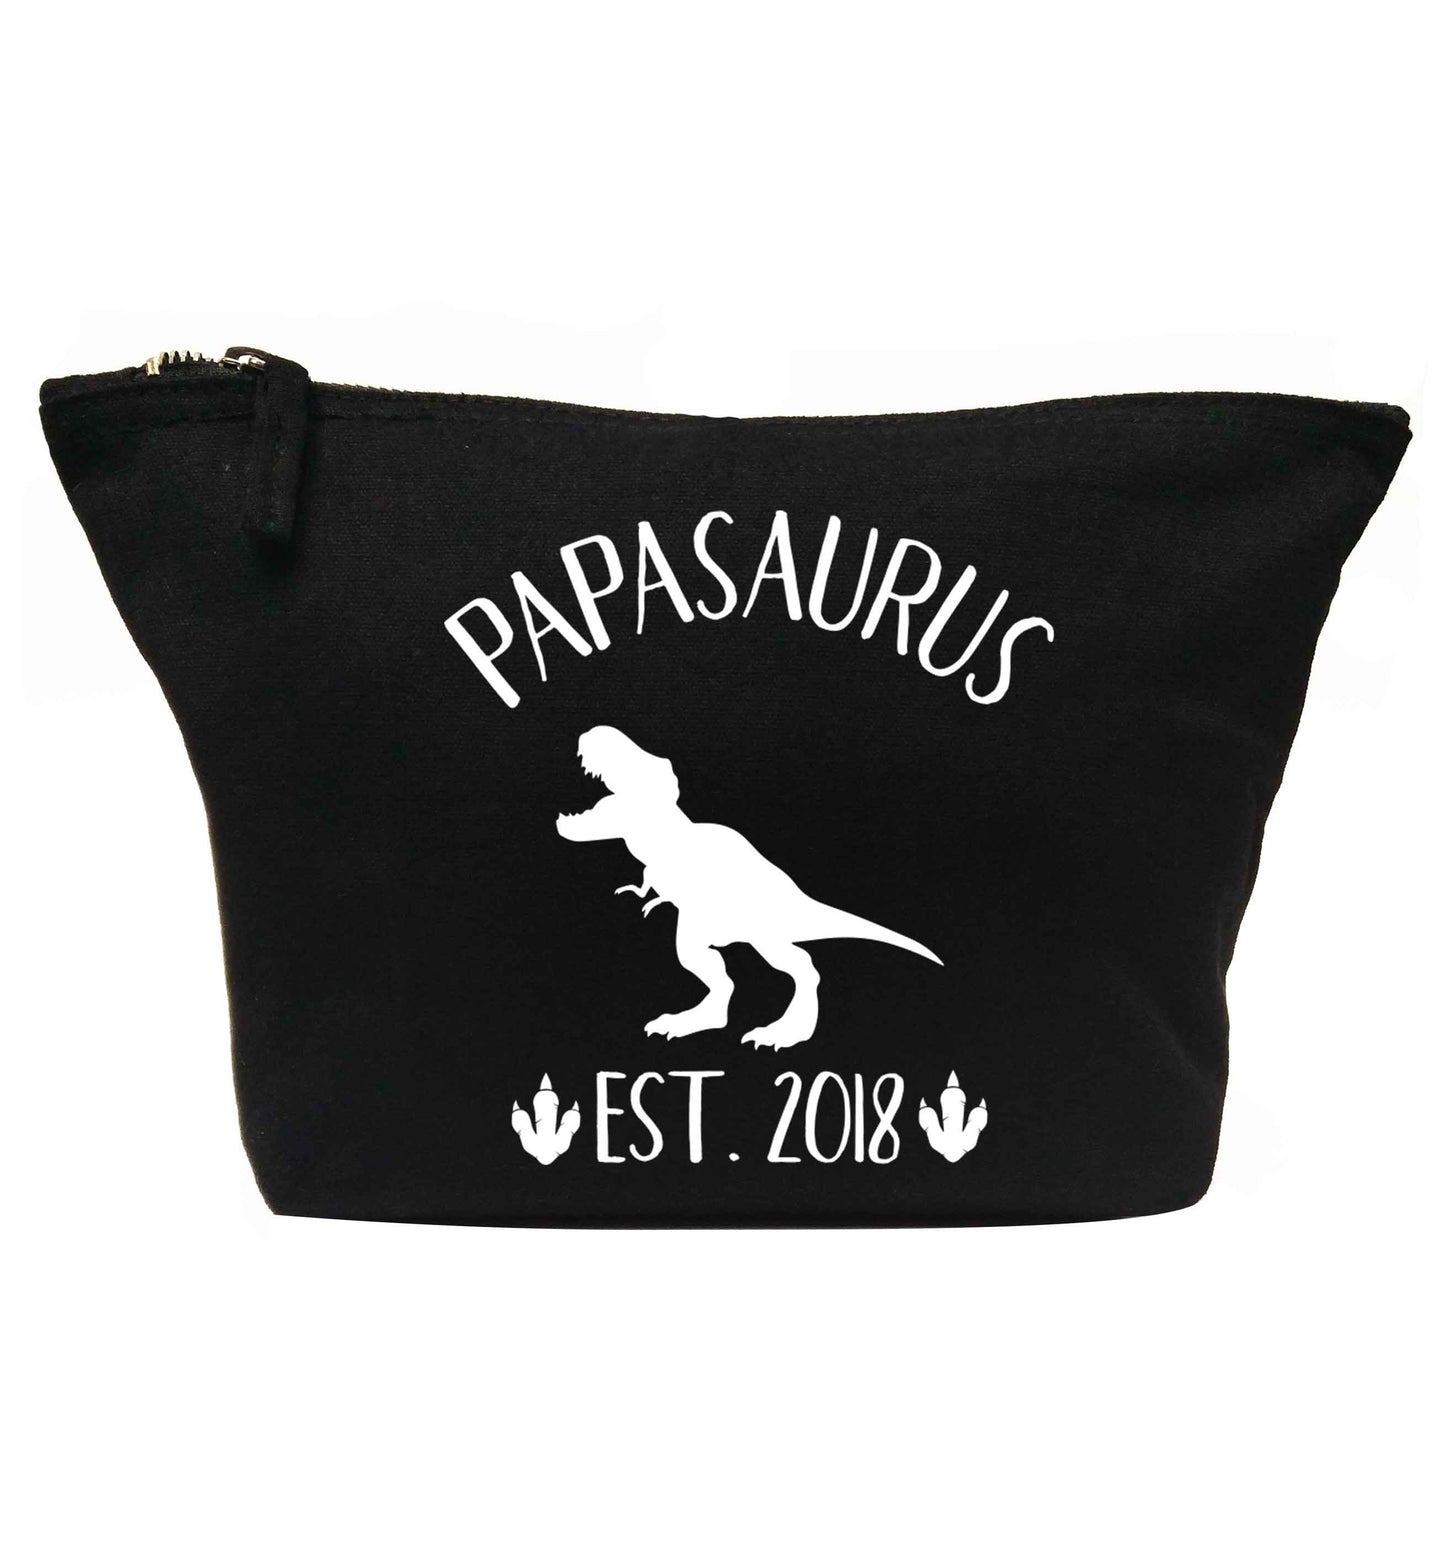 Personalised papasaurus since (custom date) | makeup / wash bag